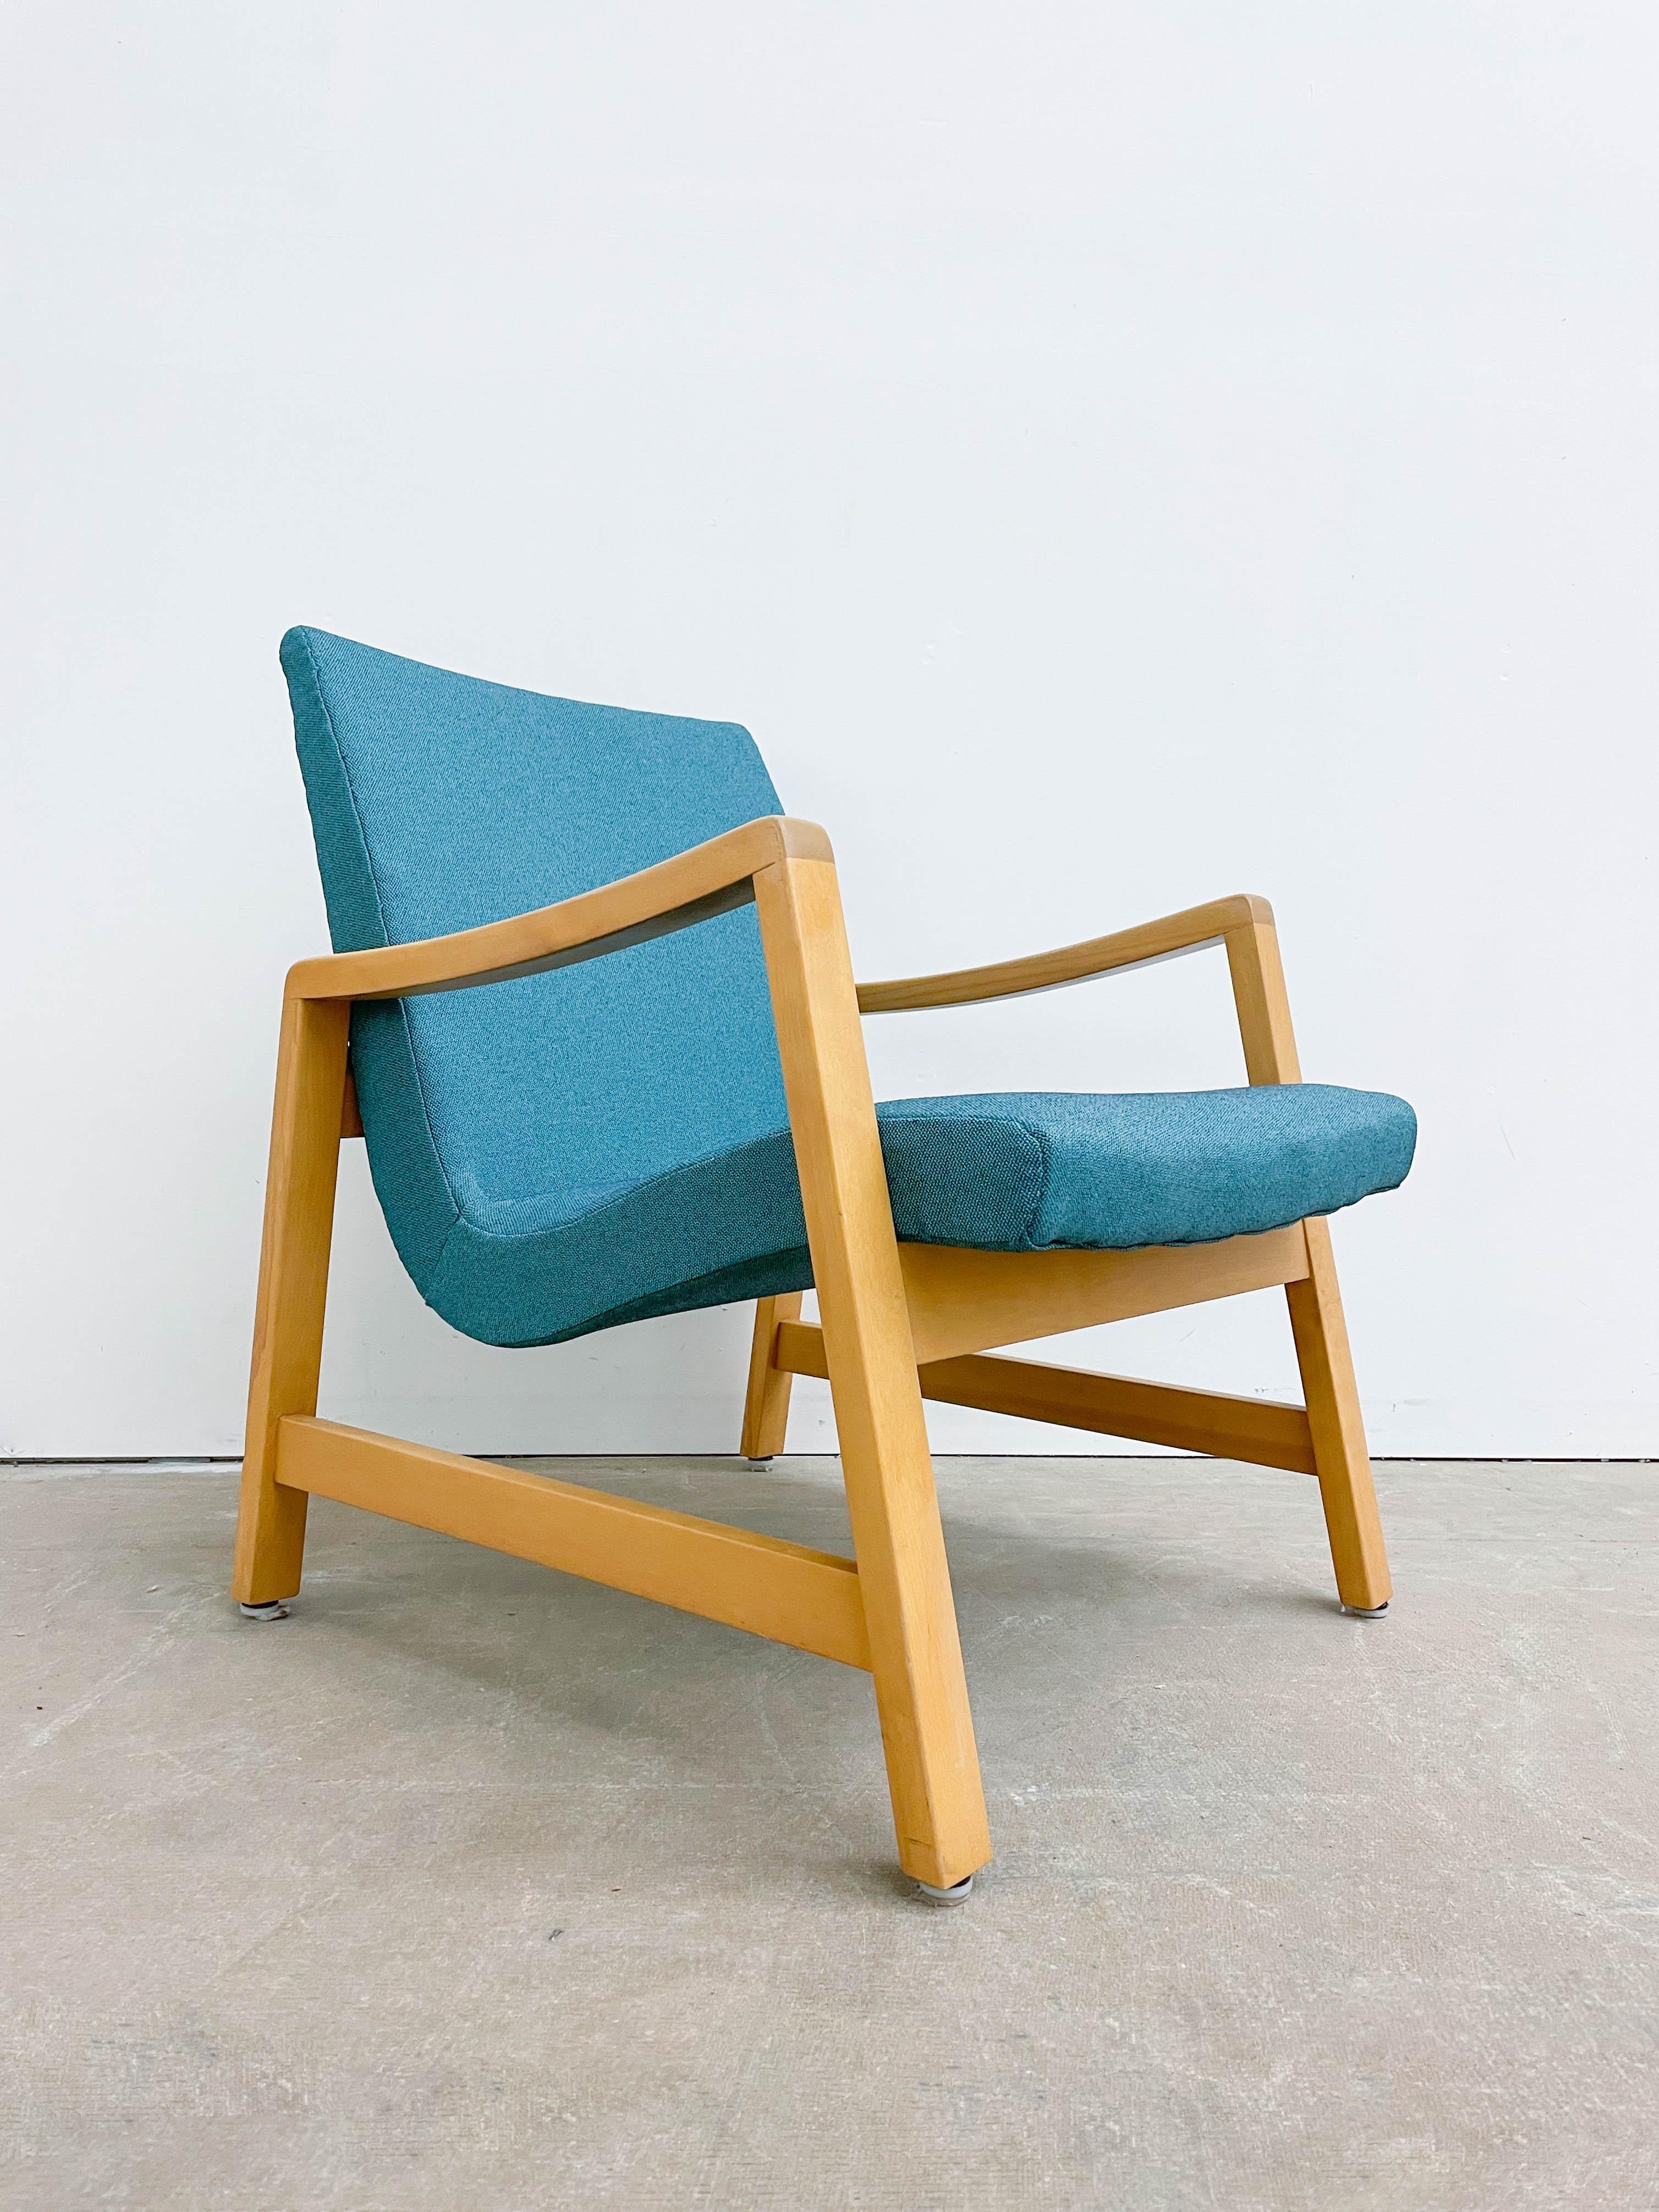 Il s'agit d'un magnifique fauteuil rembourré conçu par Jens Risom pour HG Knoll & Associates dans les années 1940. Il s'agit de l'une des premières chaises emblématiques qui ont inauguré une période d'incroyable design moderne du milieu du siècle